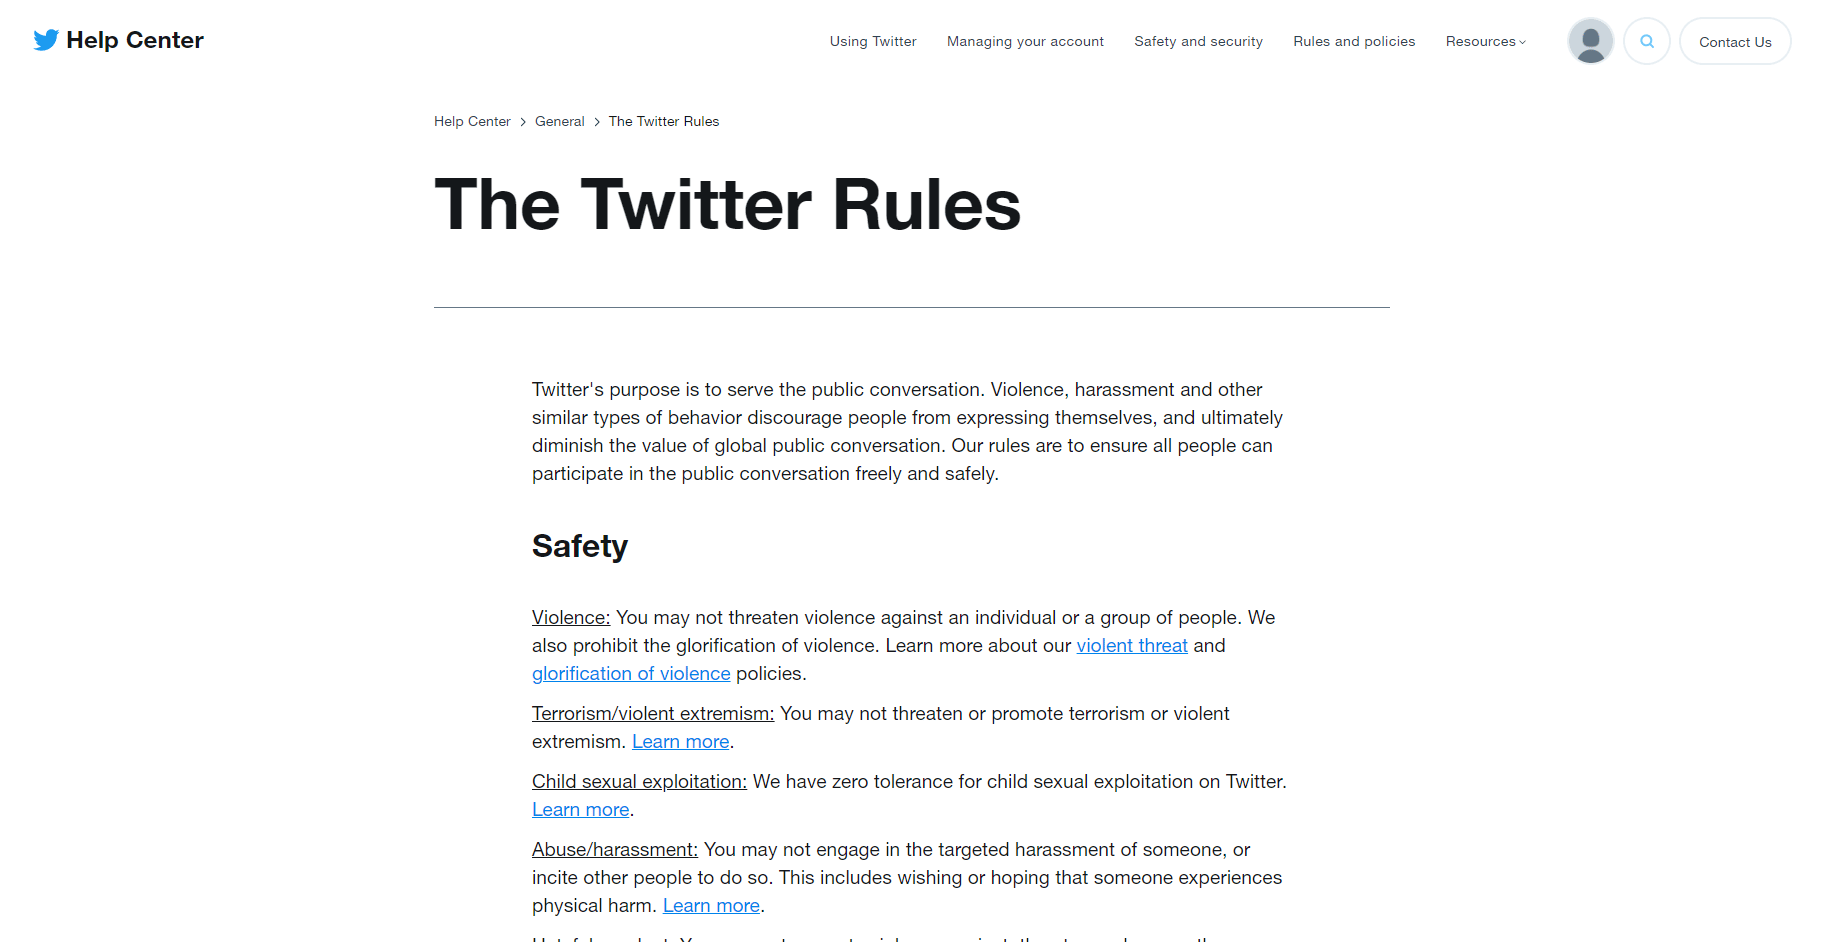 ٹویٹر کے قواعد